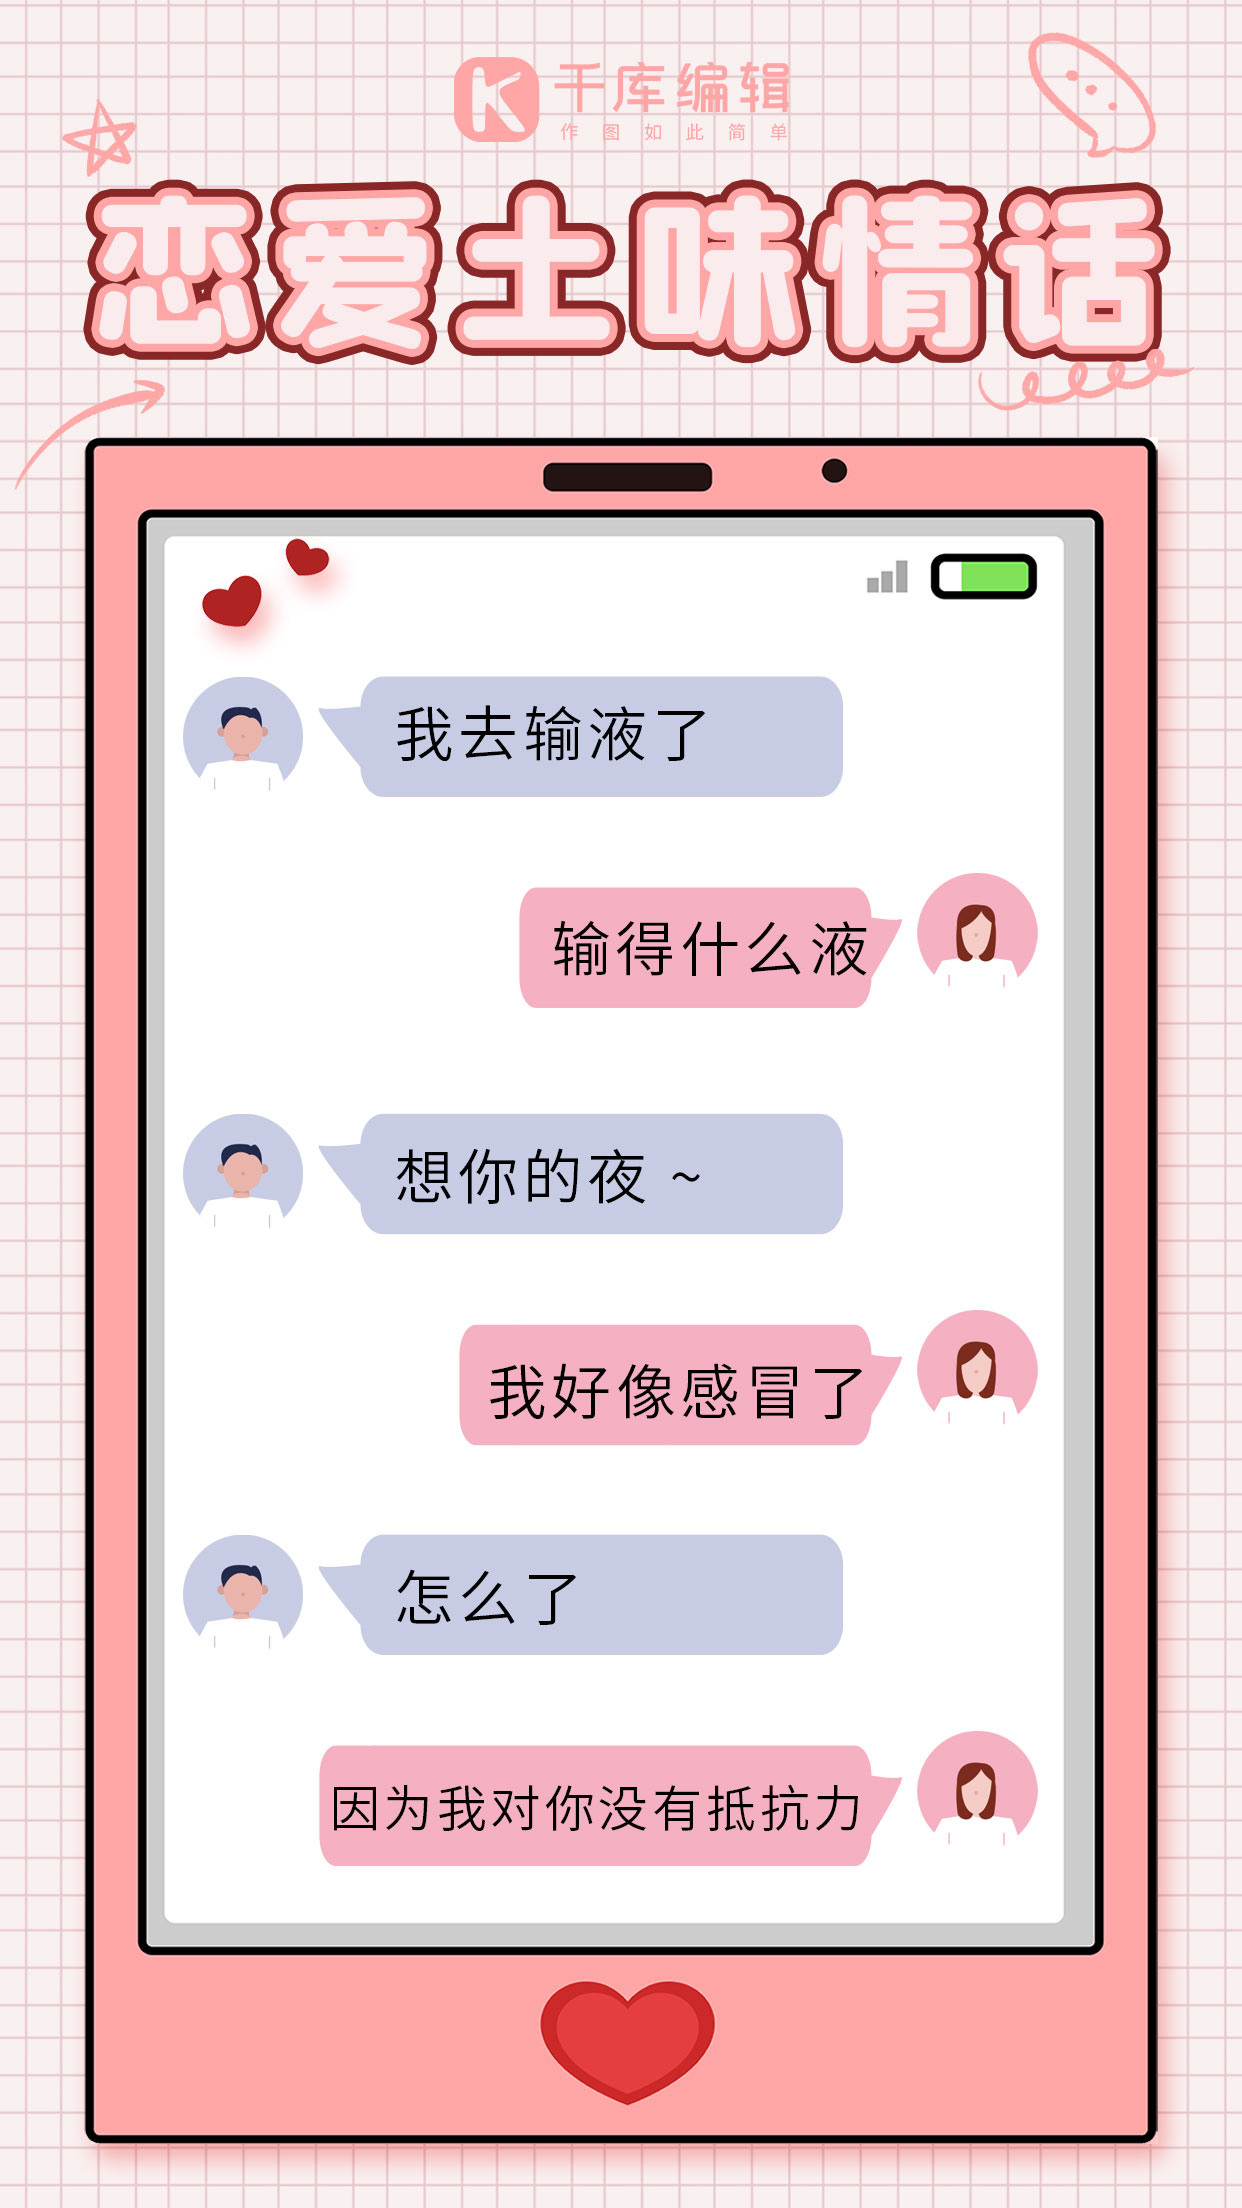 对话形式七夕520情人节恋爱土味情话粉色浪漫唯美手机海报图片